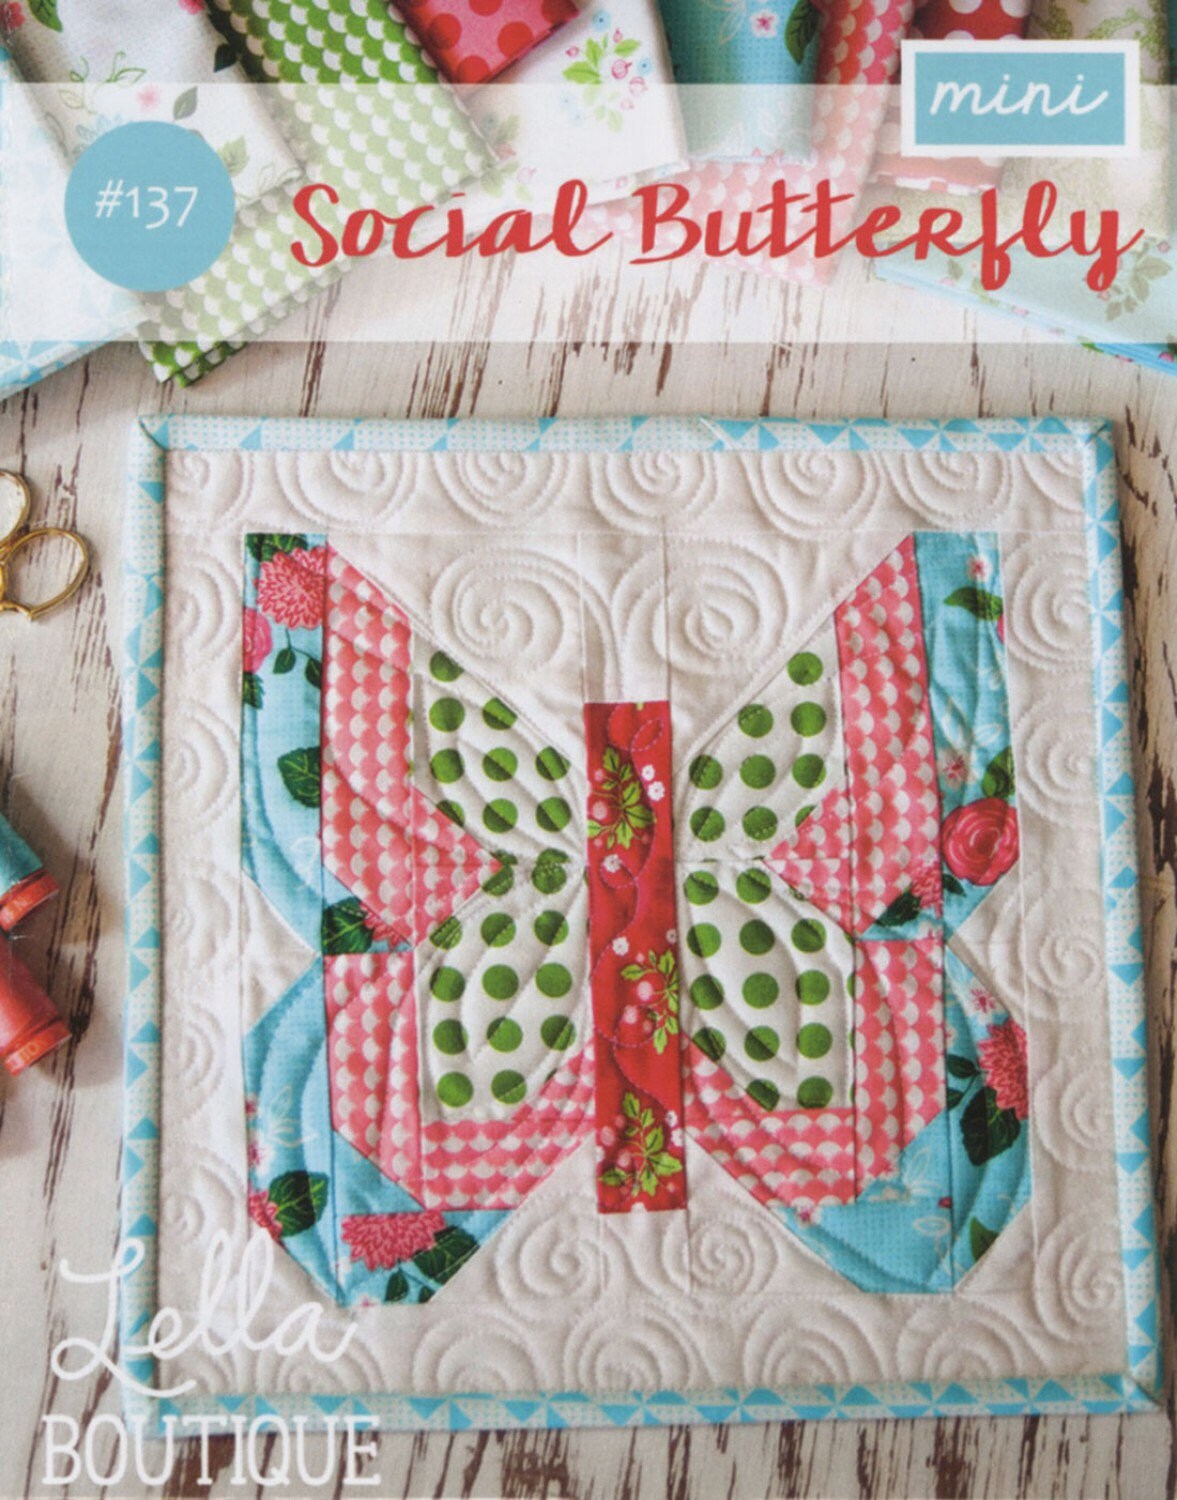 Social Butterfly Mini Quilt Pattern - Lella Boutique - Vanessa Goertzen - Mini Quilt